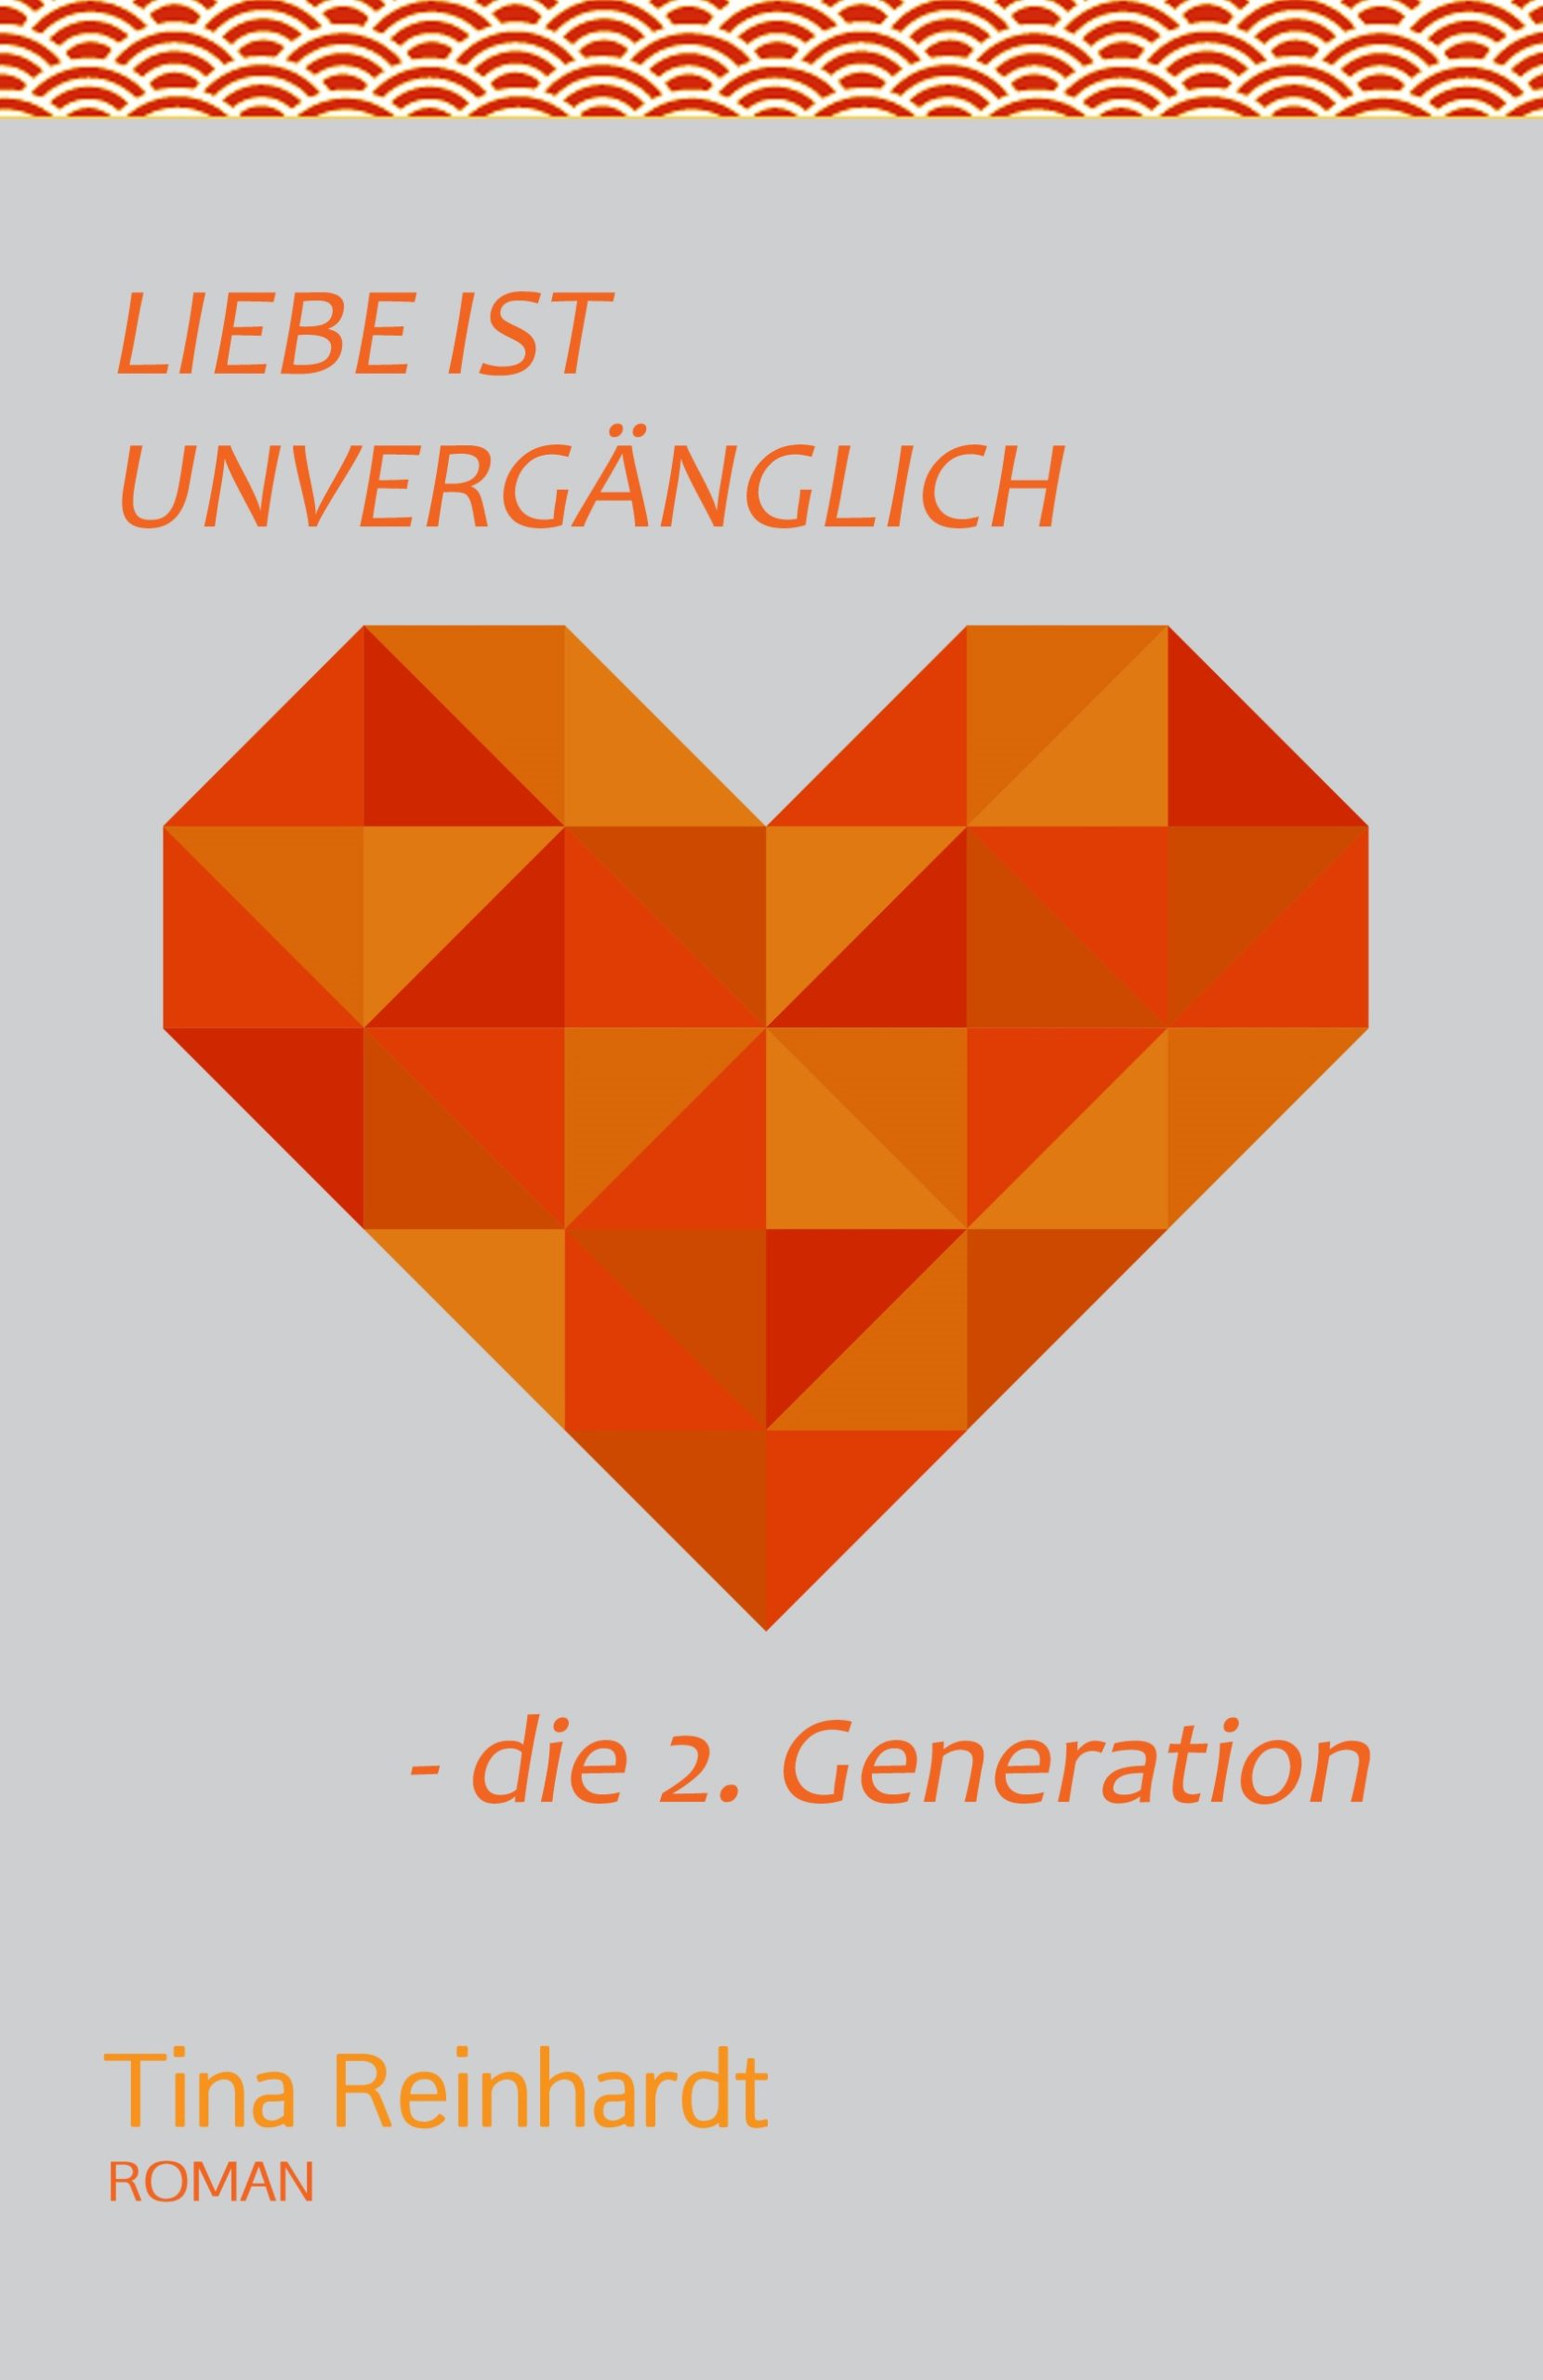 Liebe ist unvergänglich - die 2. Generation